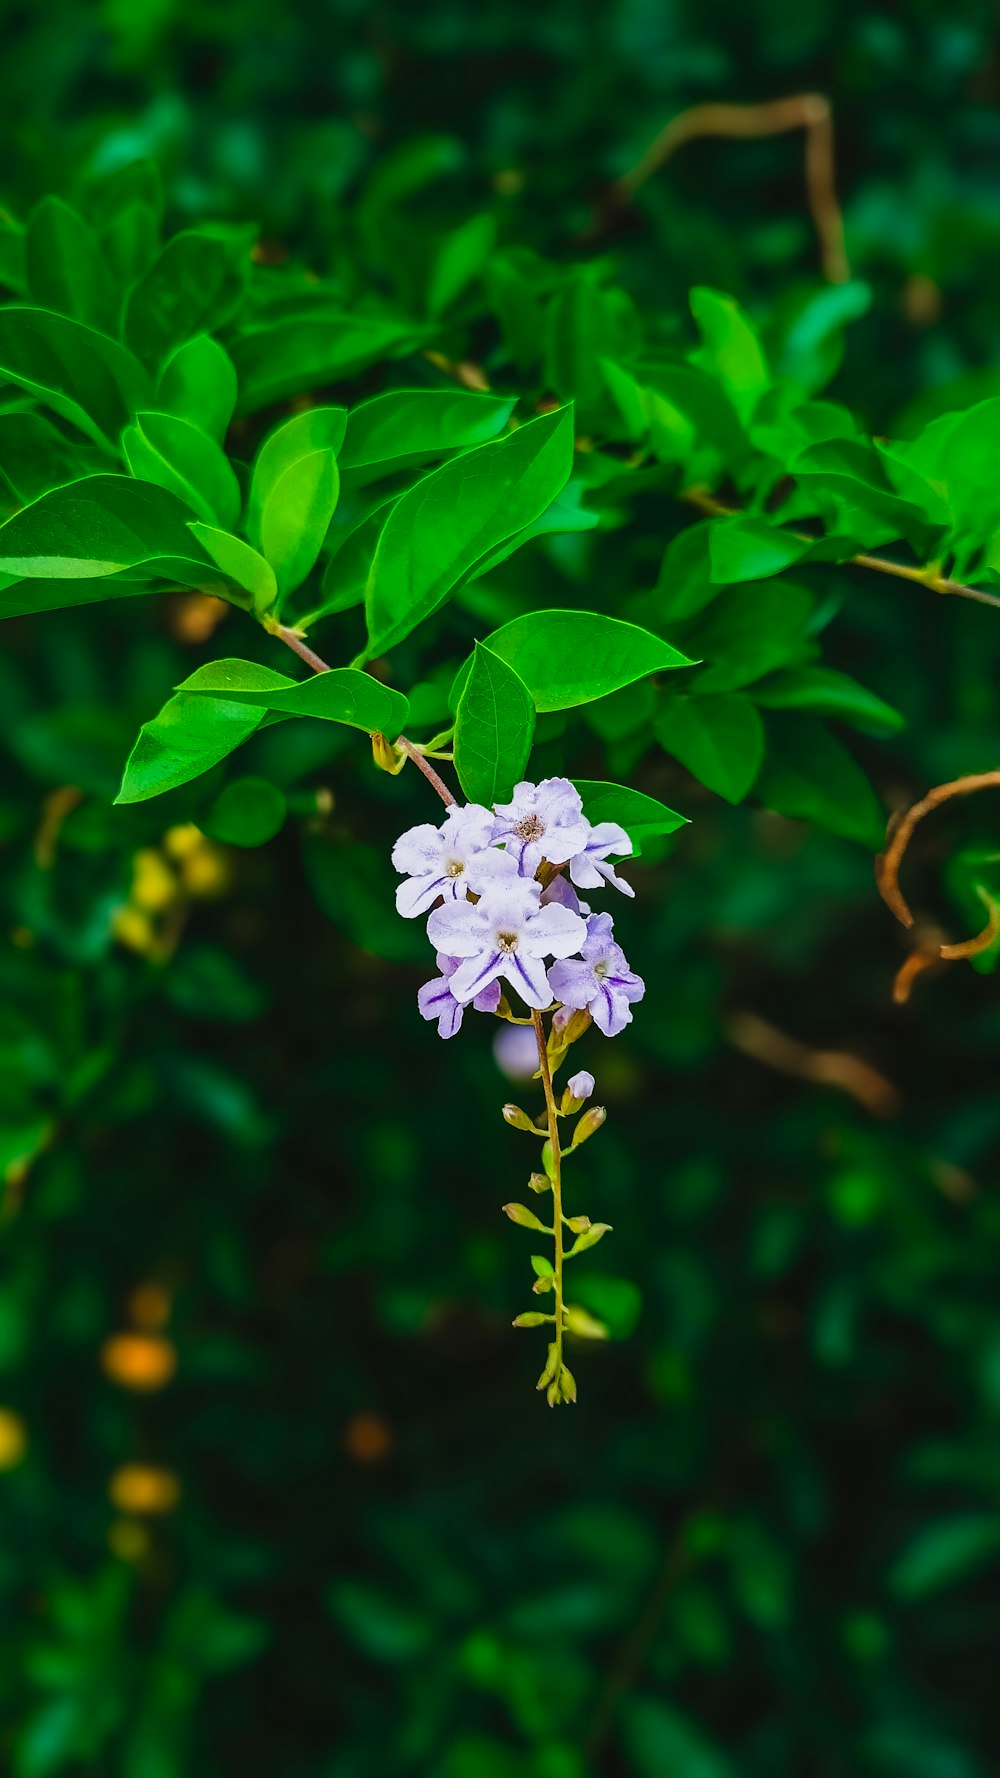 eine weiße und violette Blume mit grünen Blättern